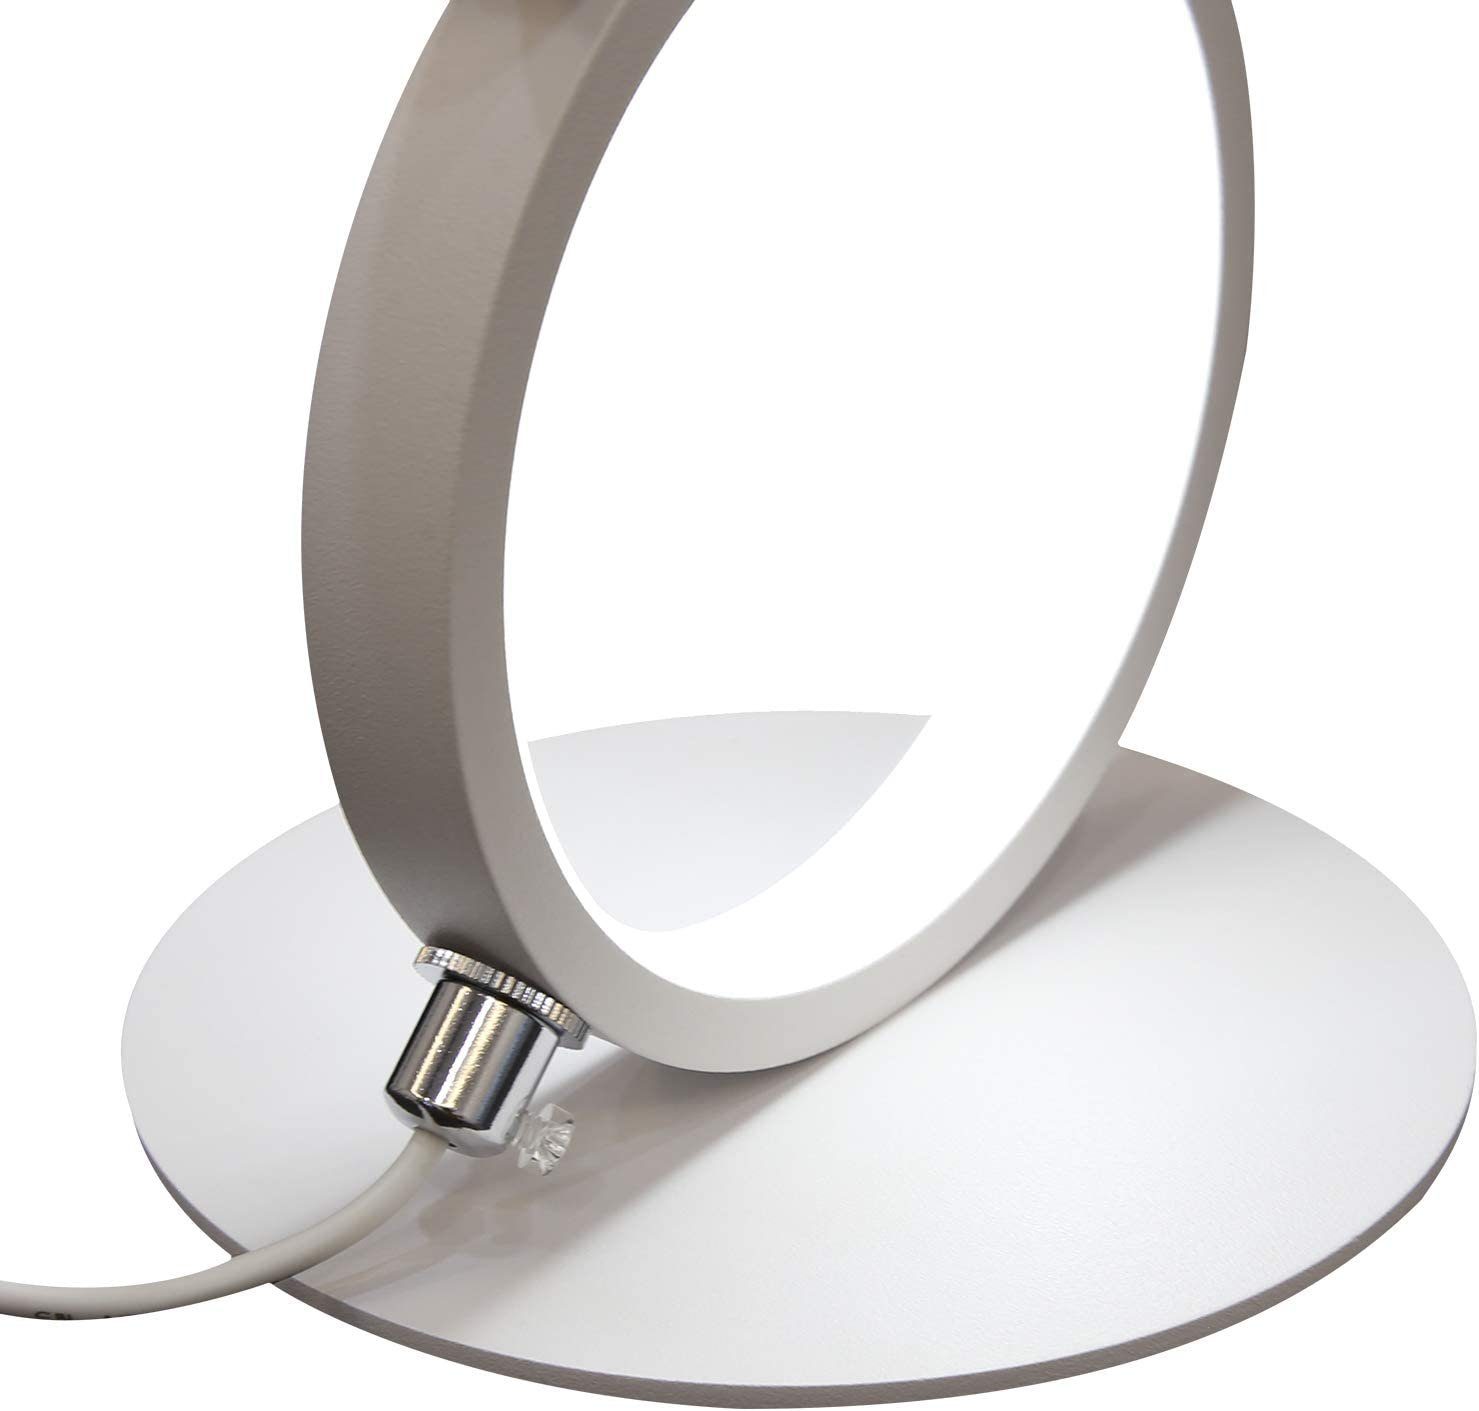 ZMH LED Ring LED Dimmbar, warmweiß-kaltweiß, Nachtlampe, 1x weiß integriert, Modern fest Deko Aluminium Weiß Nachttischlampe Tischleuchte